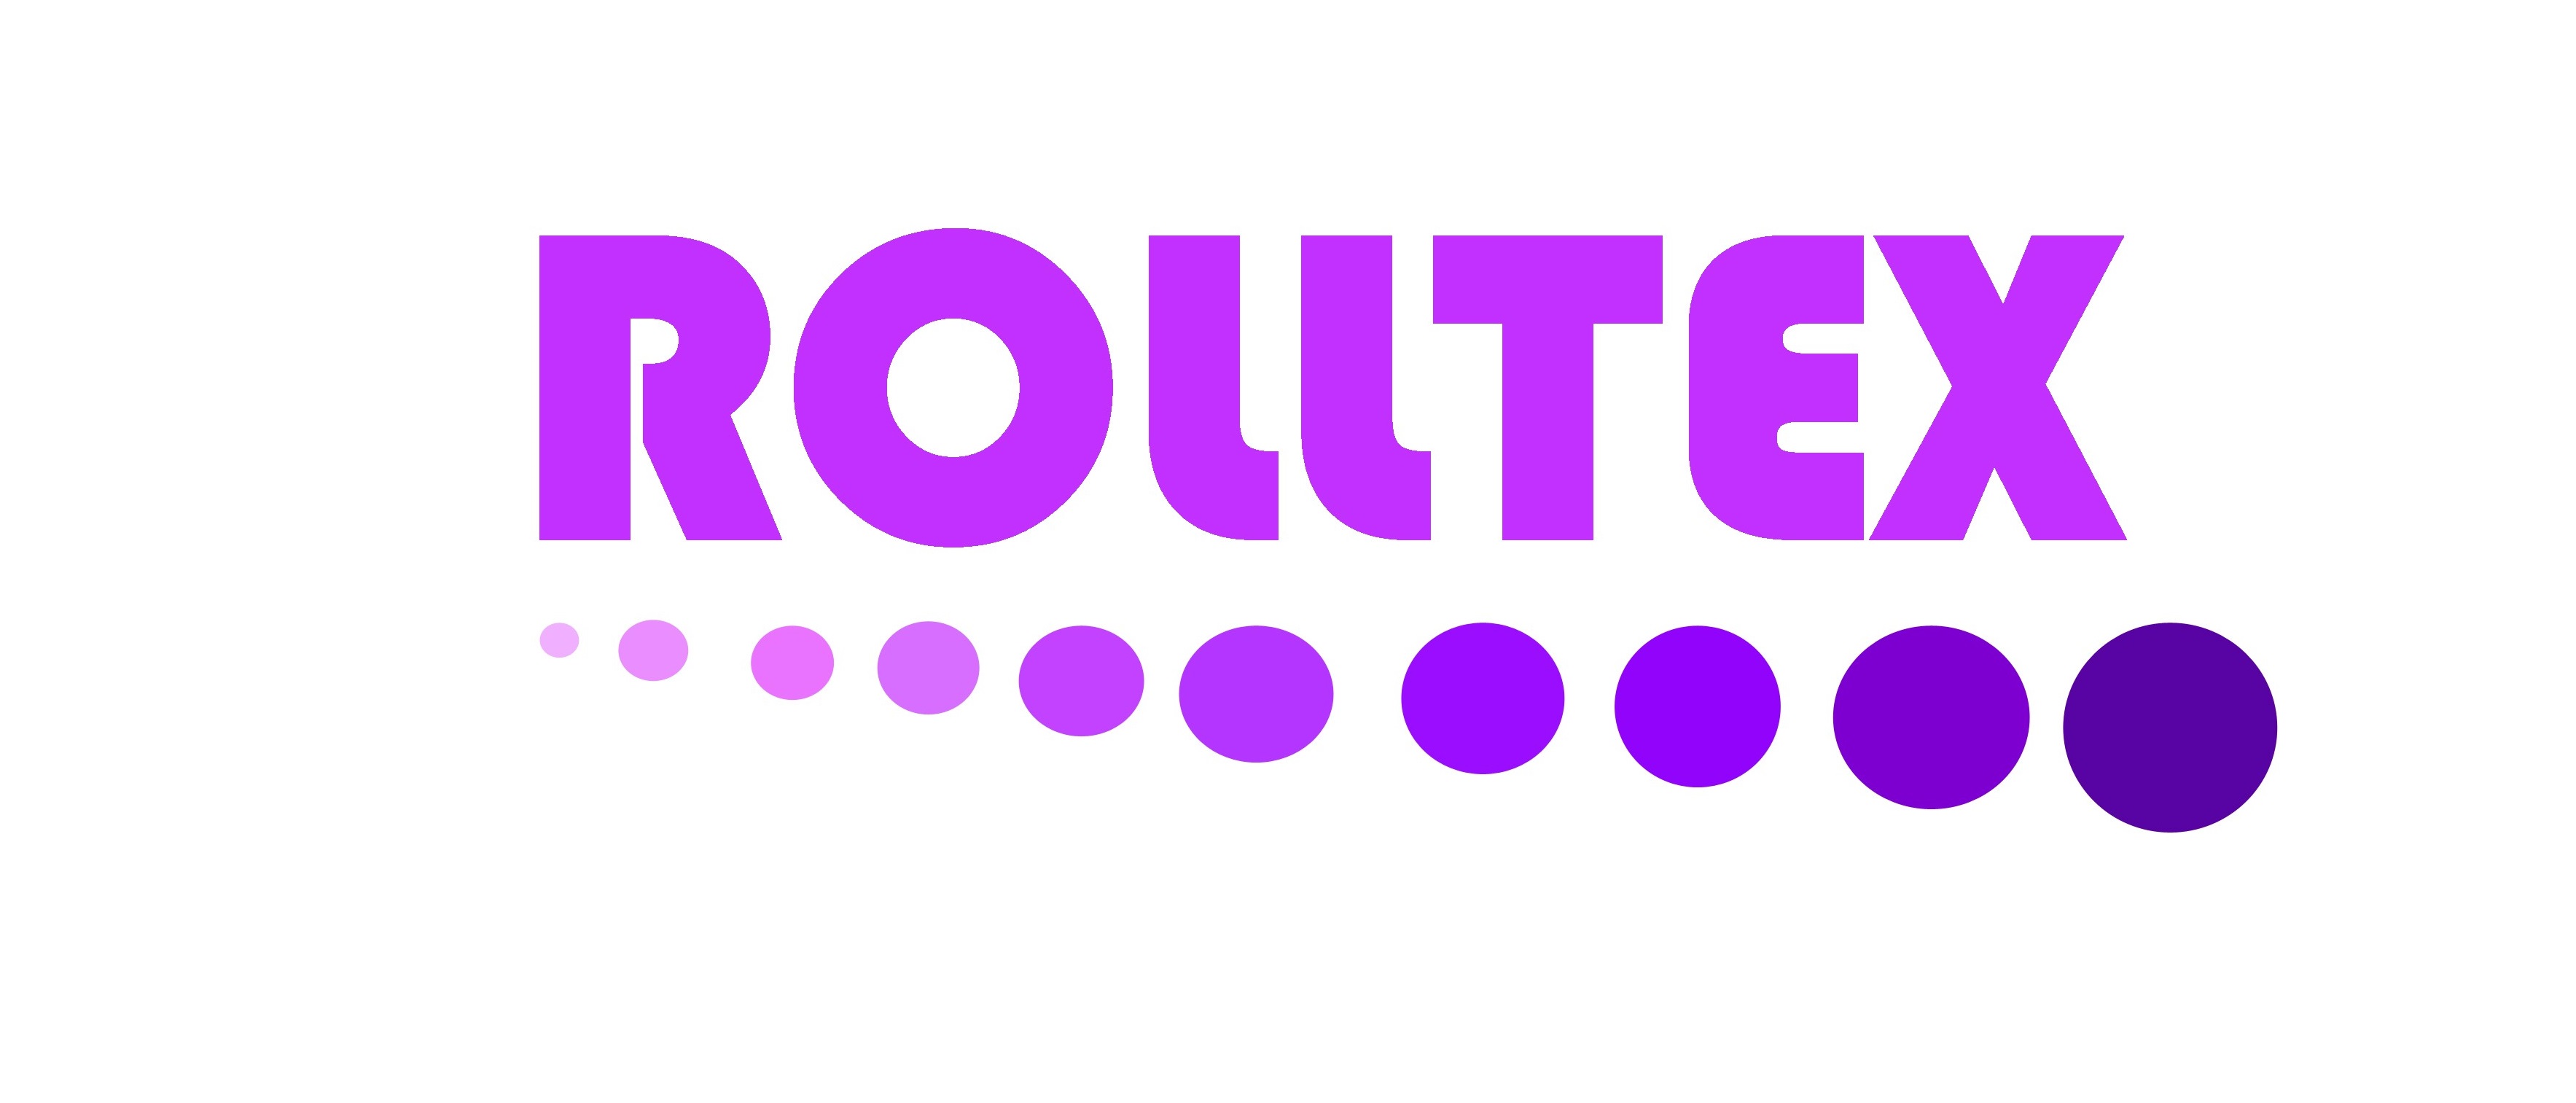 Rolltex